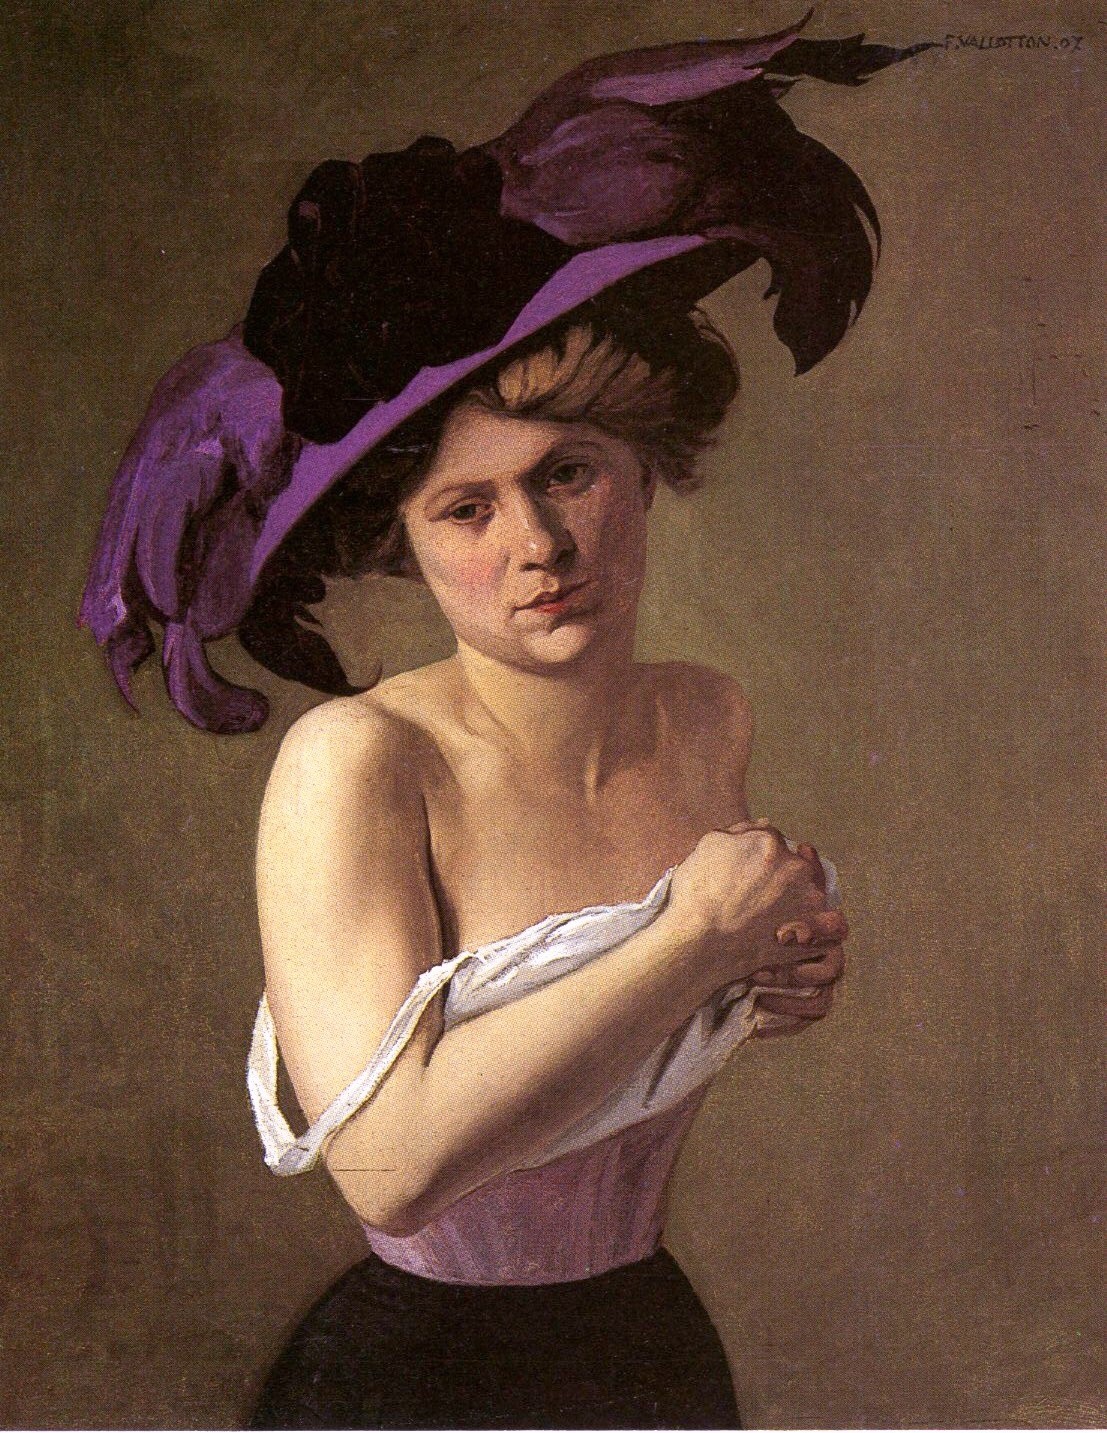 Félix Vallotton (1865-1925), The Purple Hat (1907), oil on canvas, 65.5 x 81 cm. Via cityzenart.